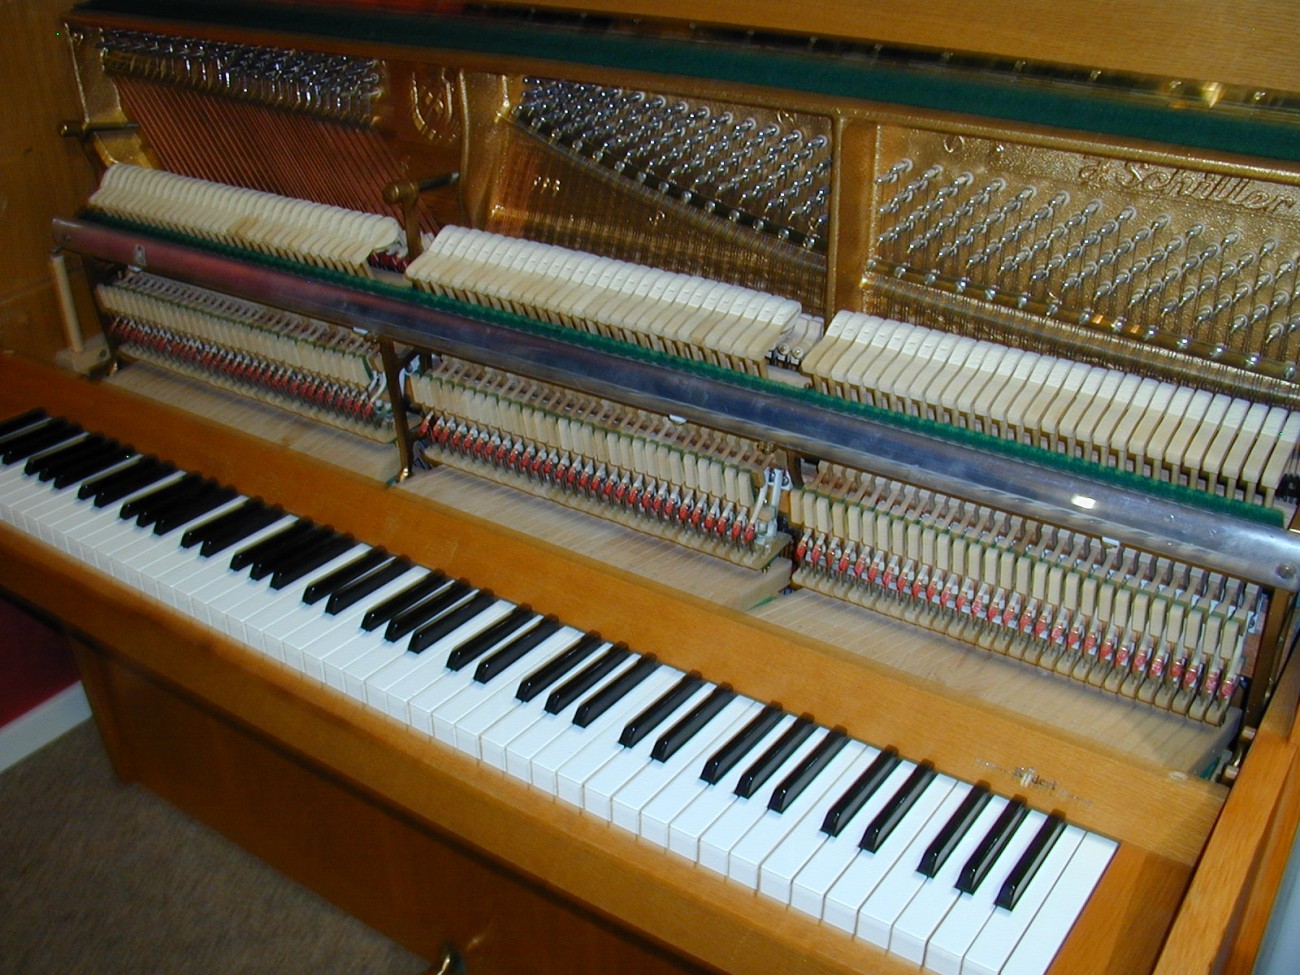 Klavier gebraucht J. Schiller